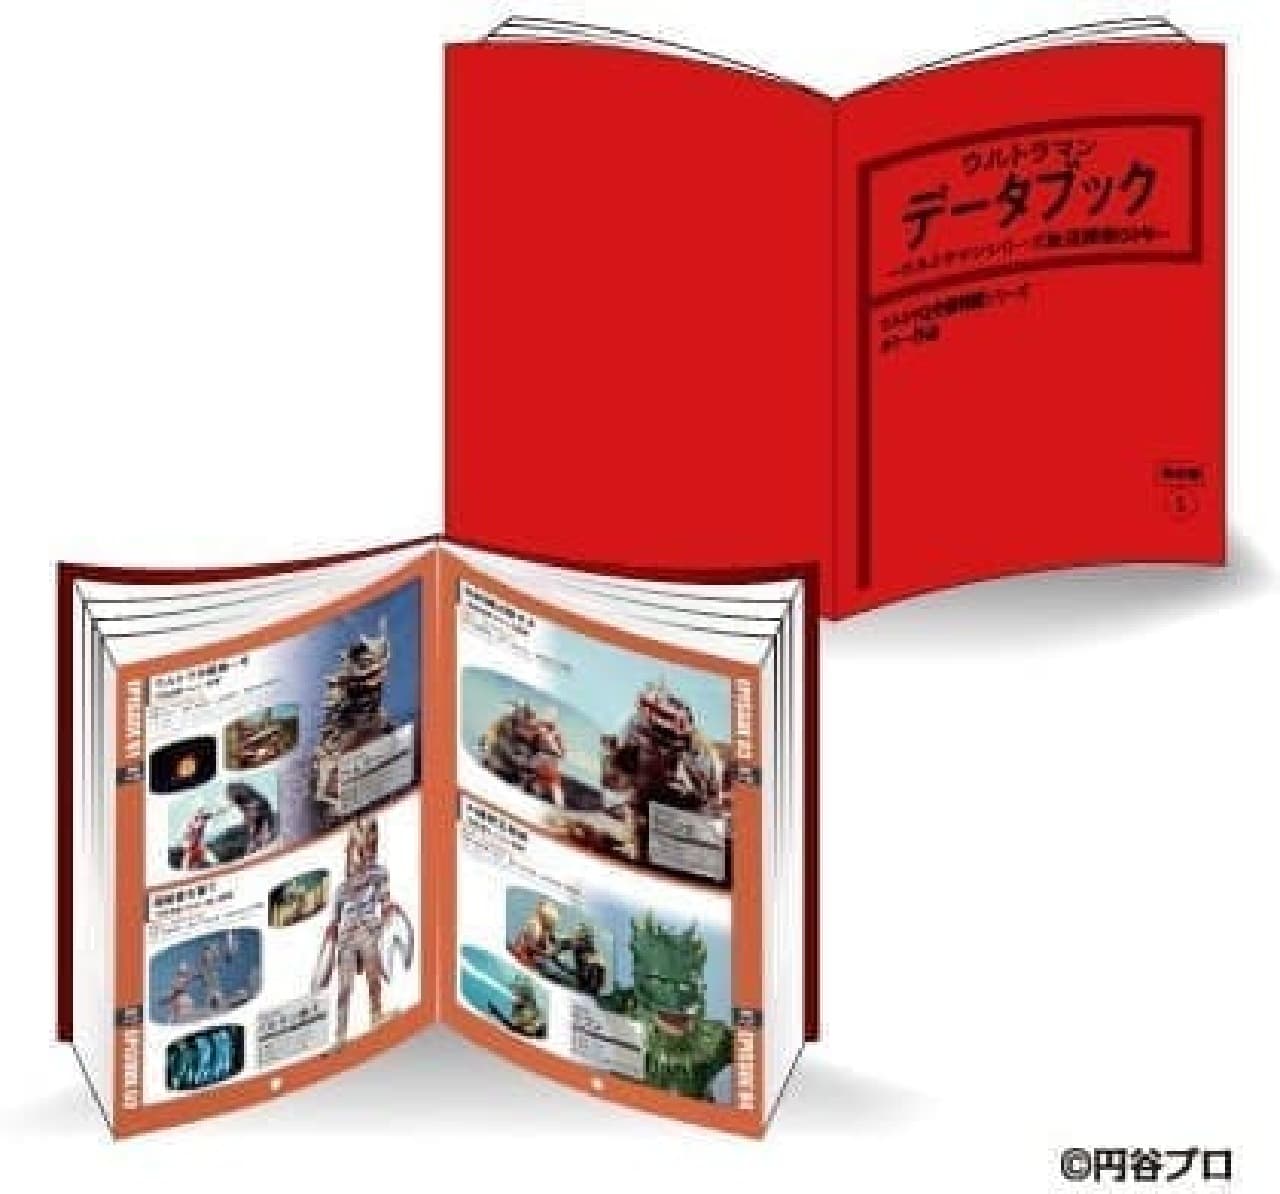 Complete version Ultraman frame stamp set